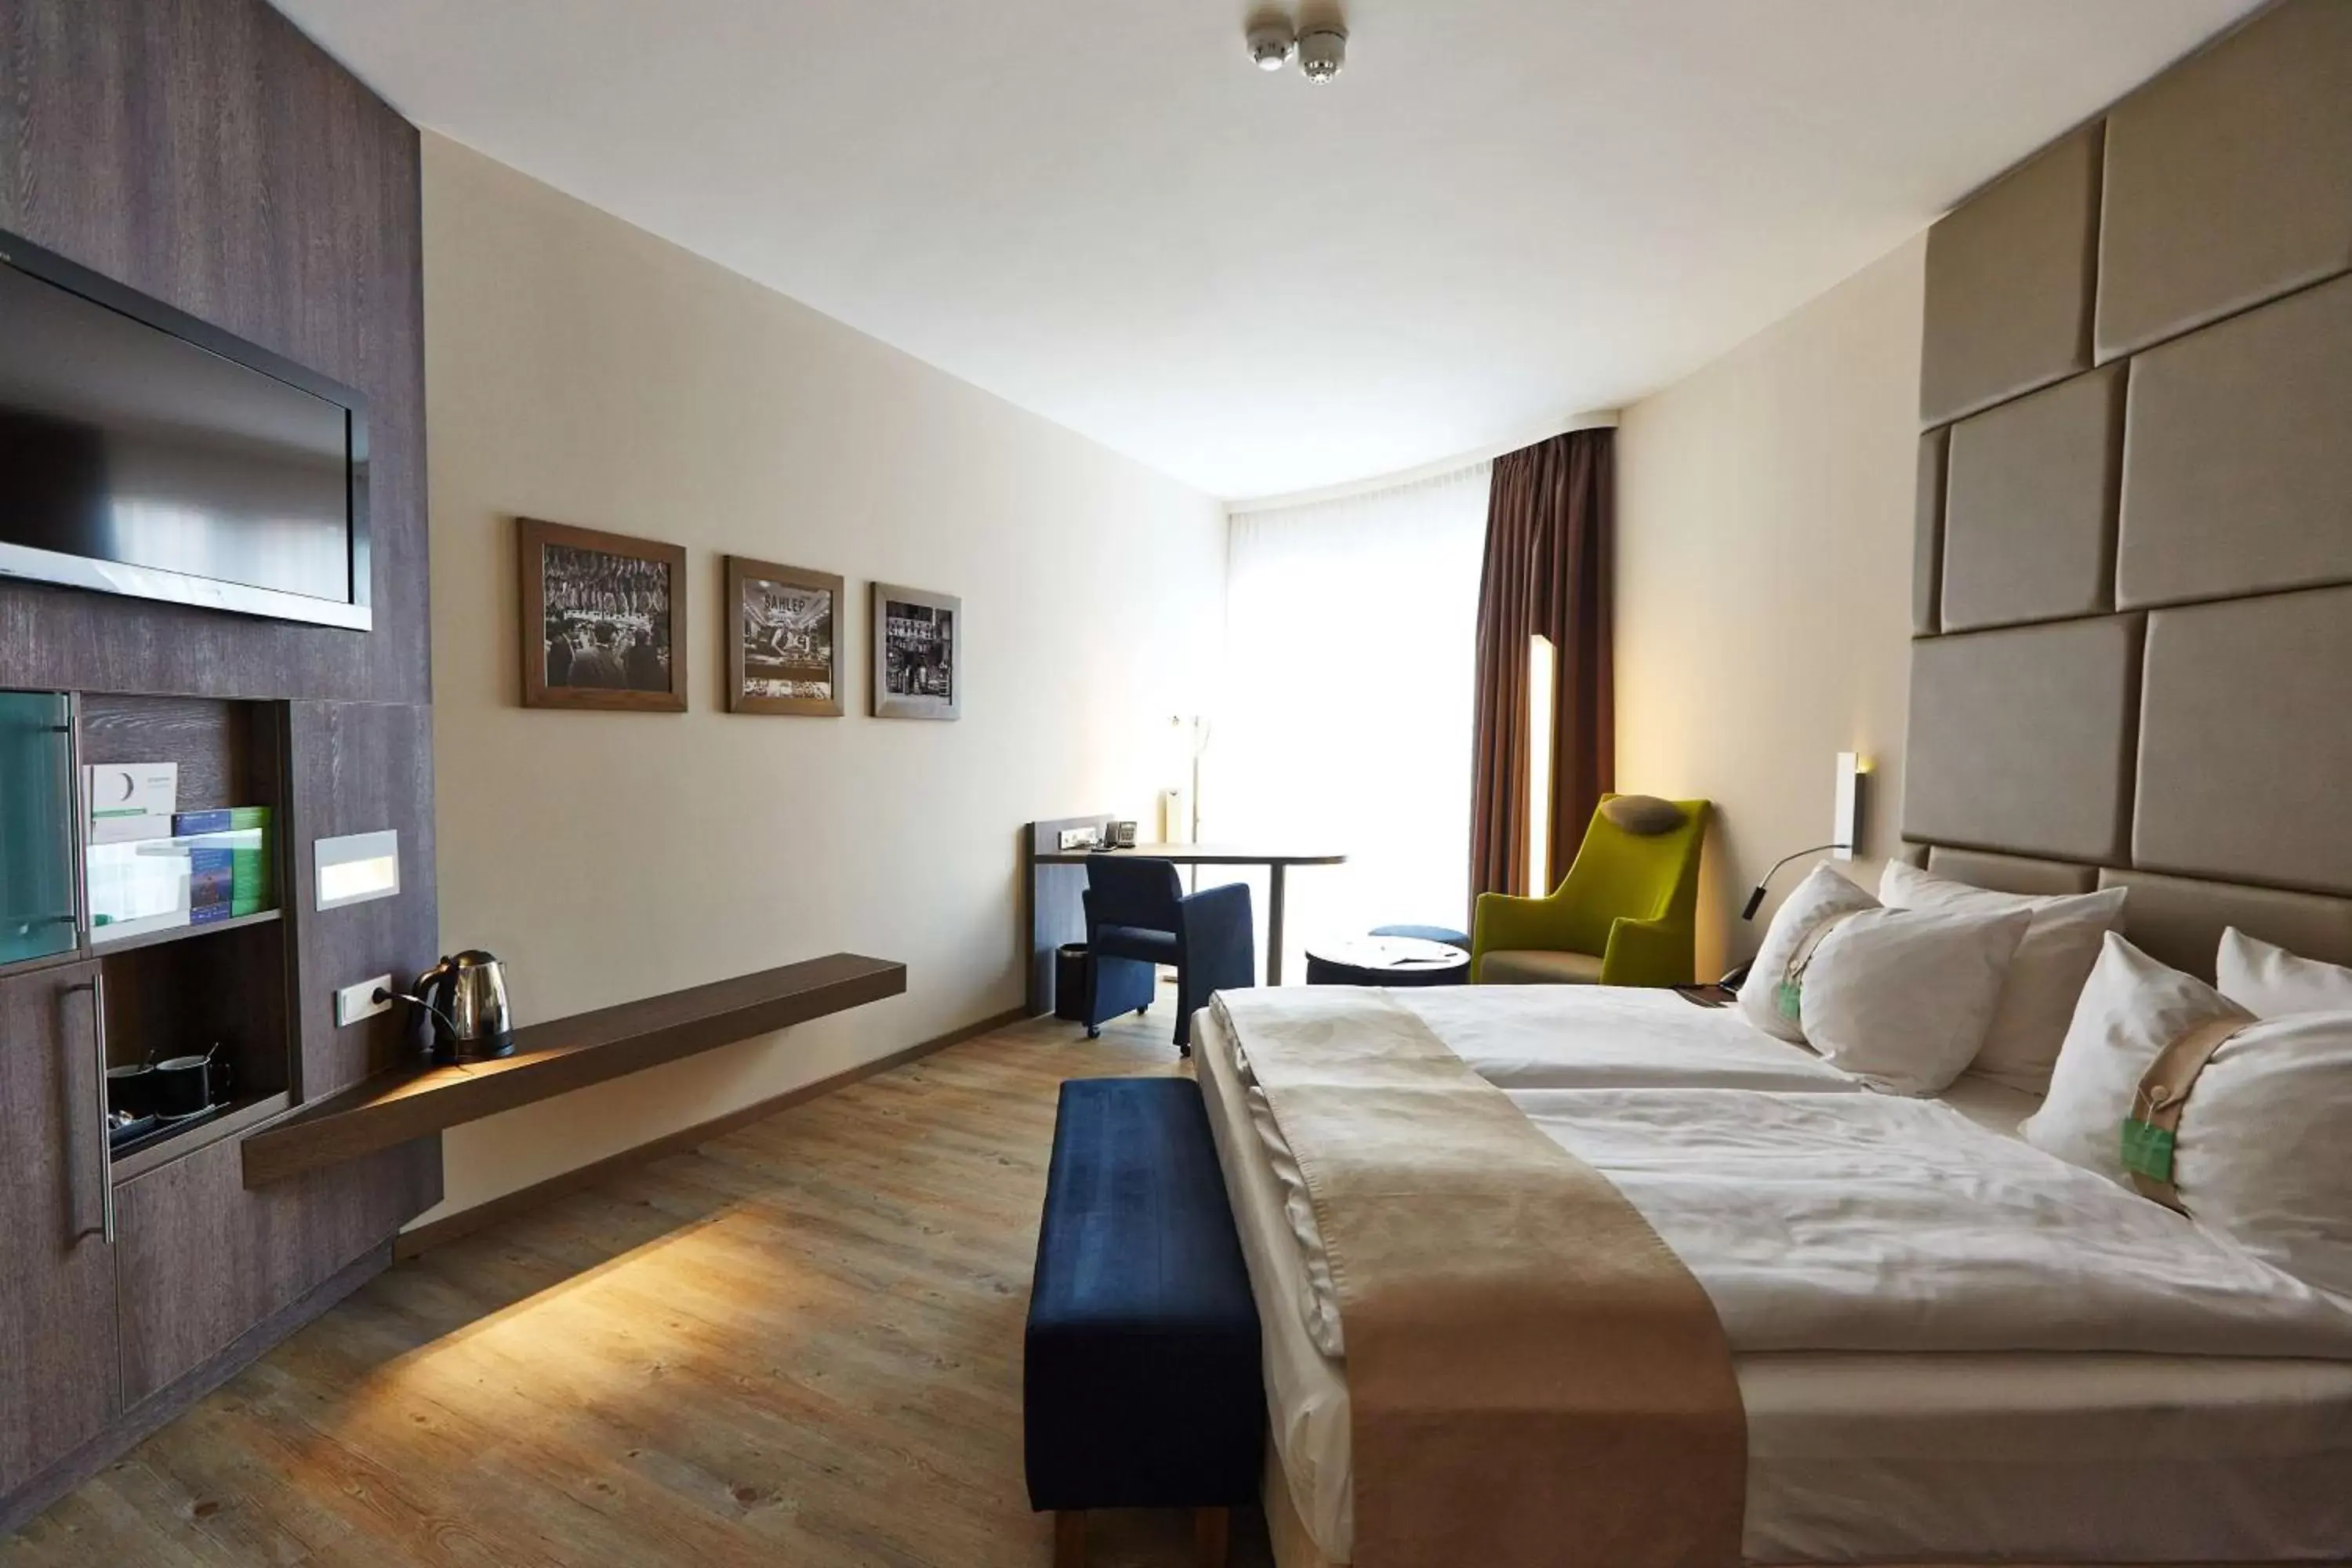 Bedroom in First Inn Hotel Zwickau